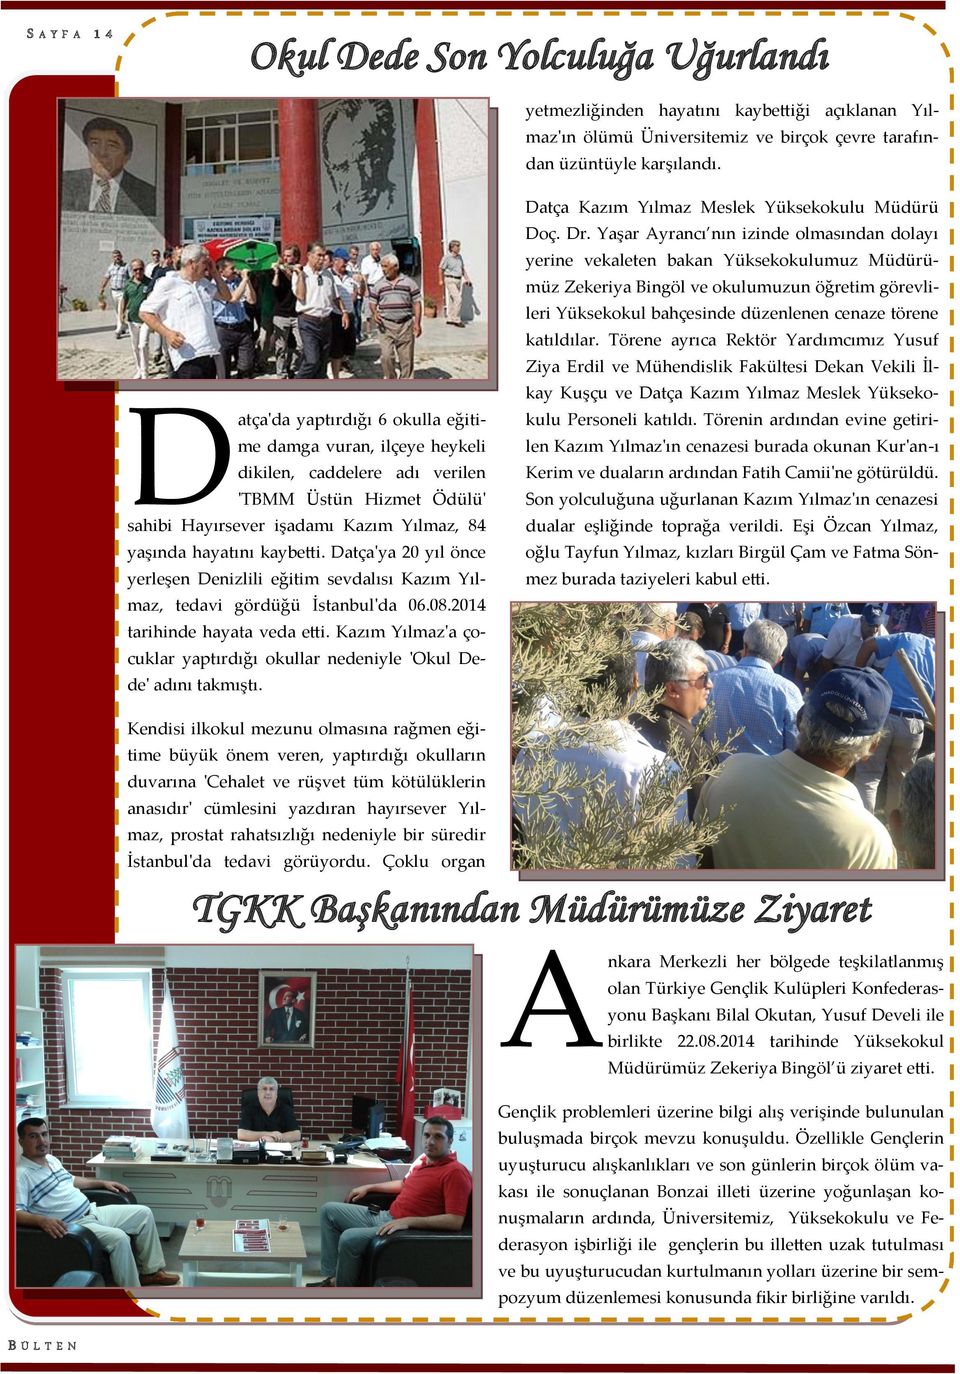 Datça'ya 20 yıl önce yerleşen Denizlili eğitim sevdalısı Kazım Yılmaz, tedavi gördüğü İstanbul'da 06.08.2014 tarihinde hayata veda etti.